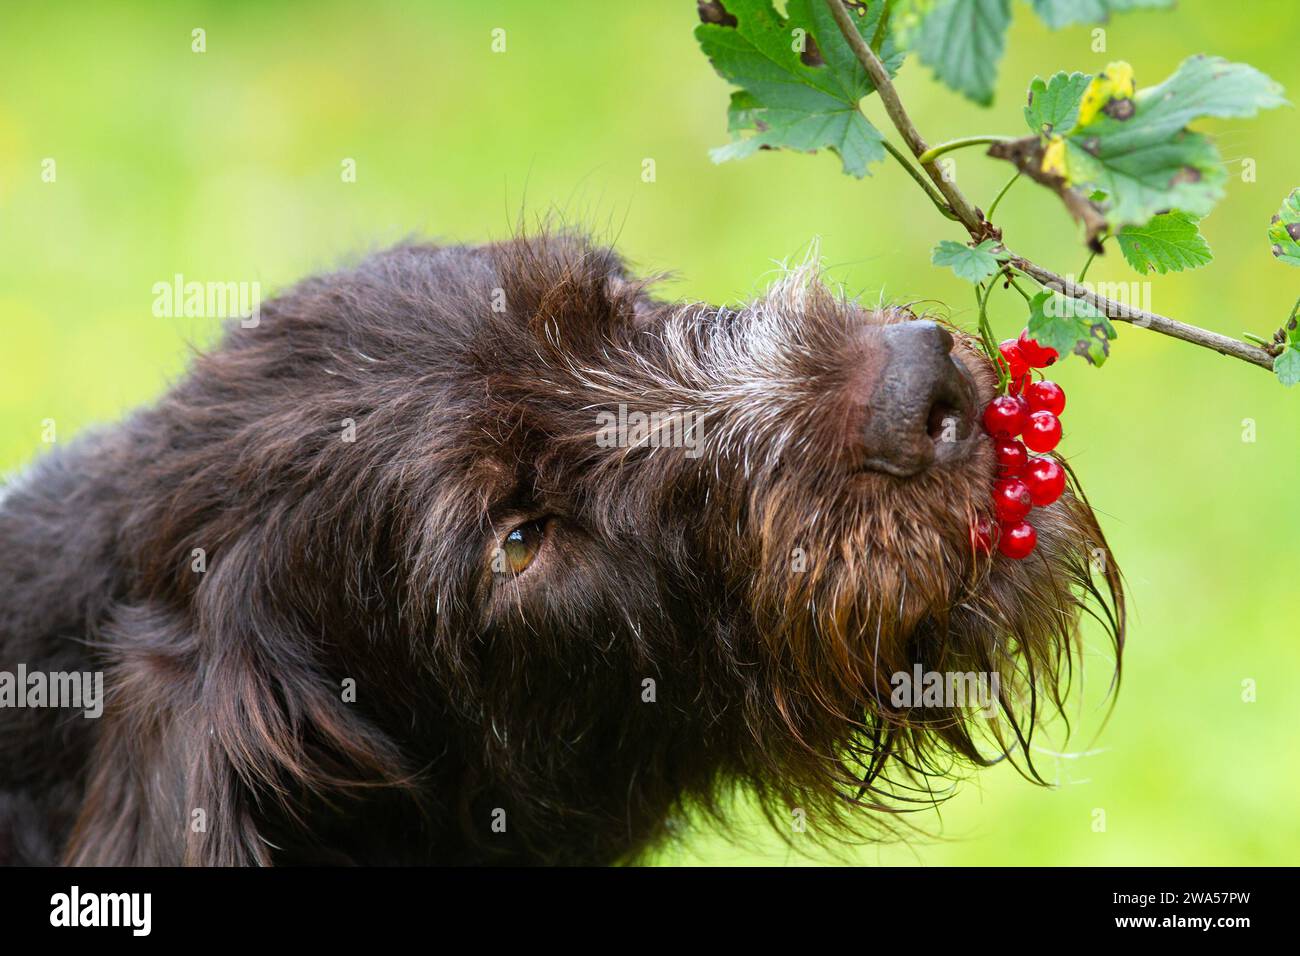 Le chien mange des baies de groseilles rouges directement de la branche. Gros plan. Banque D'Images